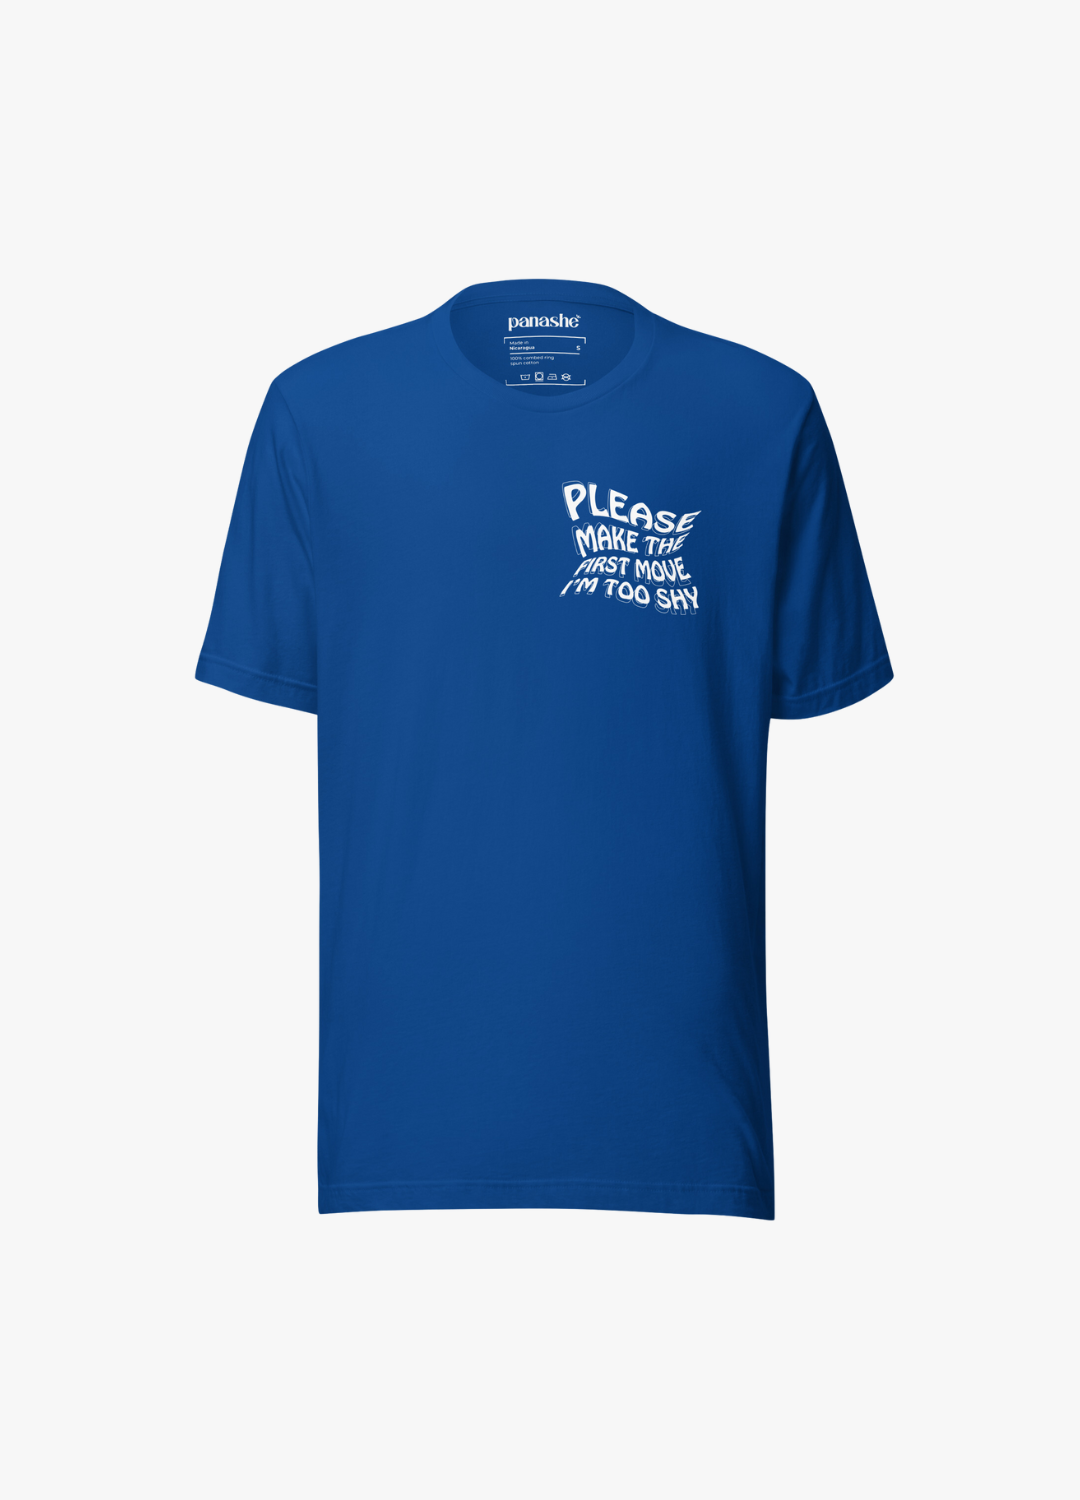 tshirt en coton ultra doux unisexe bleu électrique avec imprimé graphique wavy drôle et original